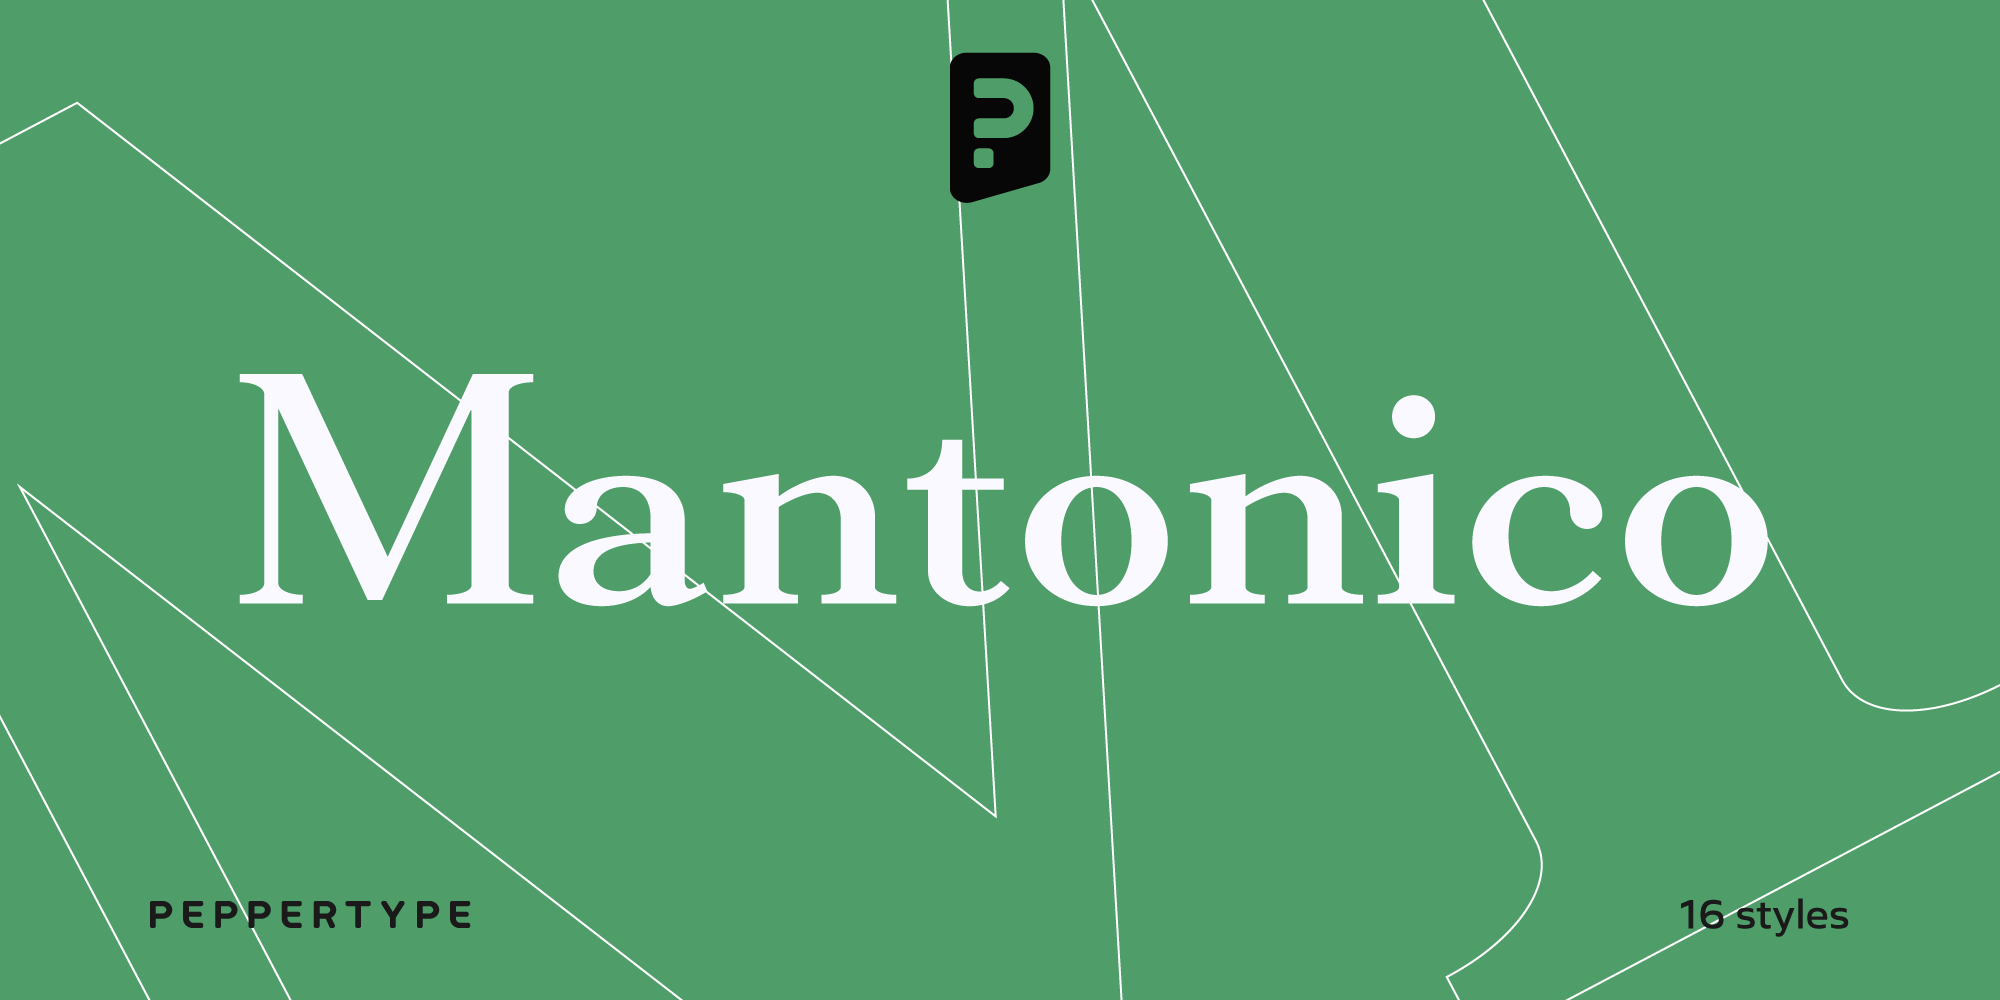 Mantonico Typeface